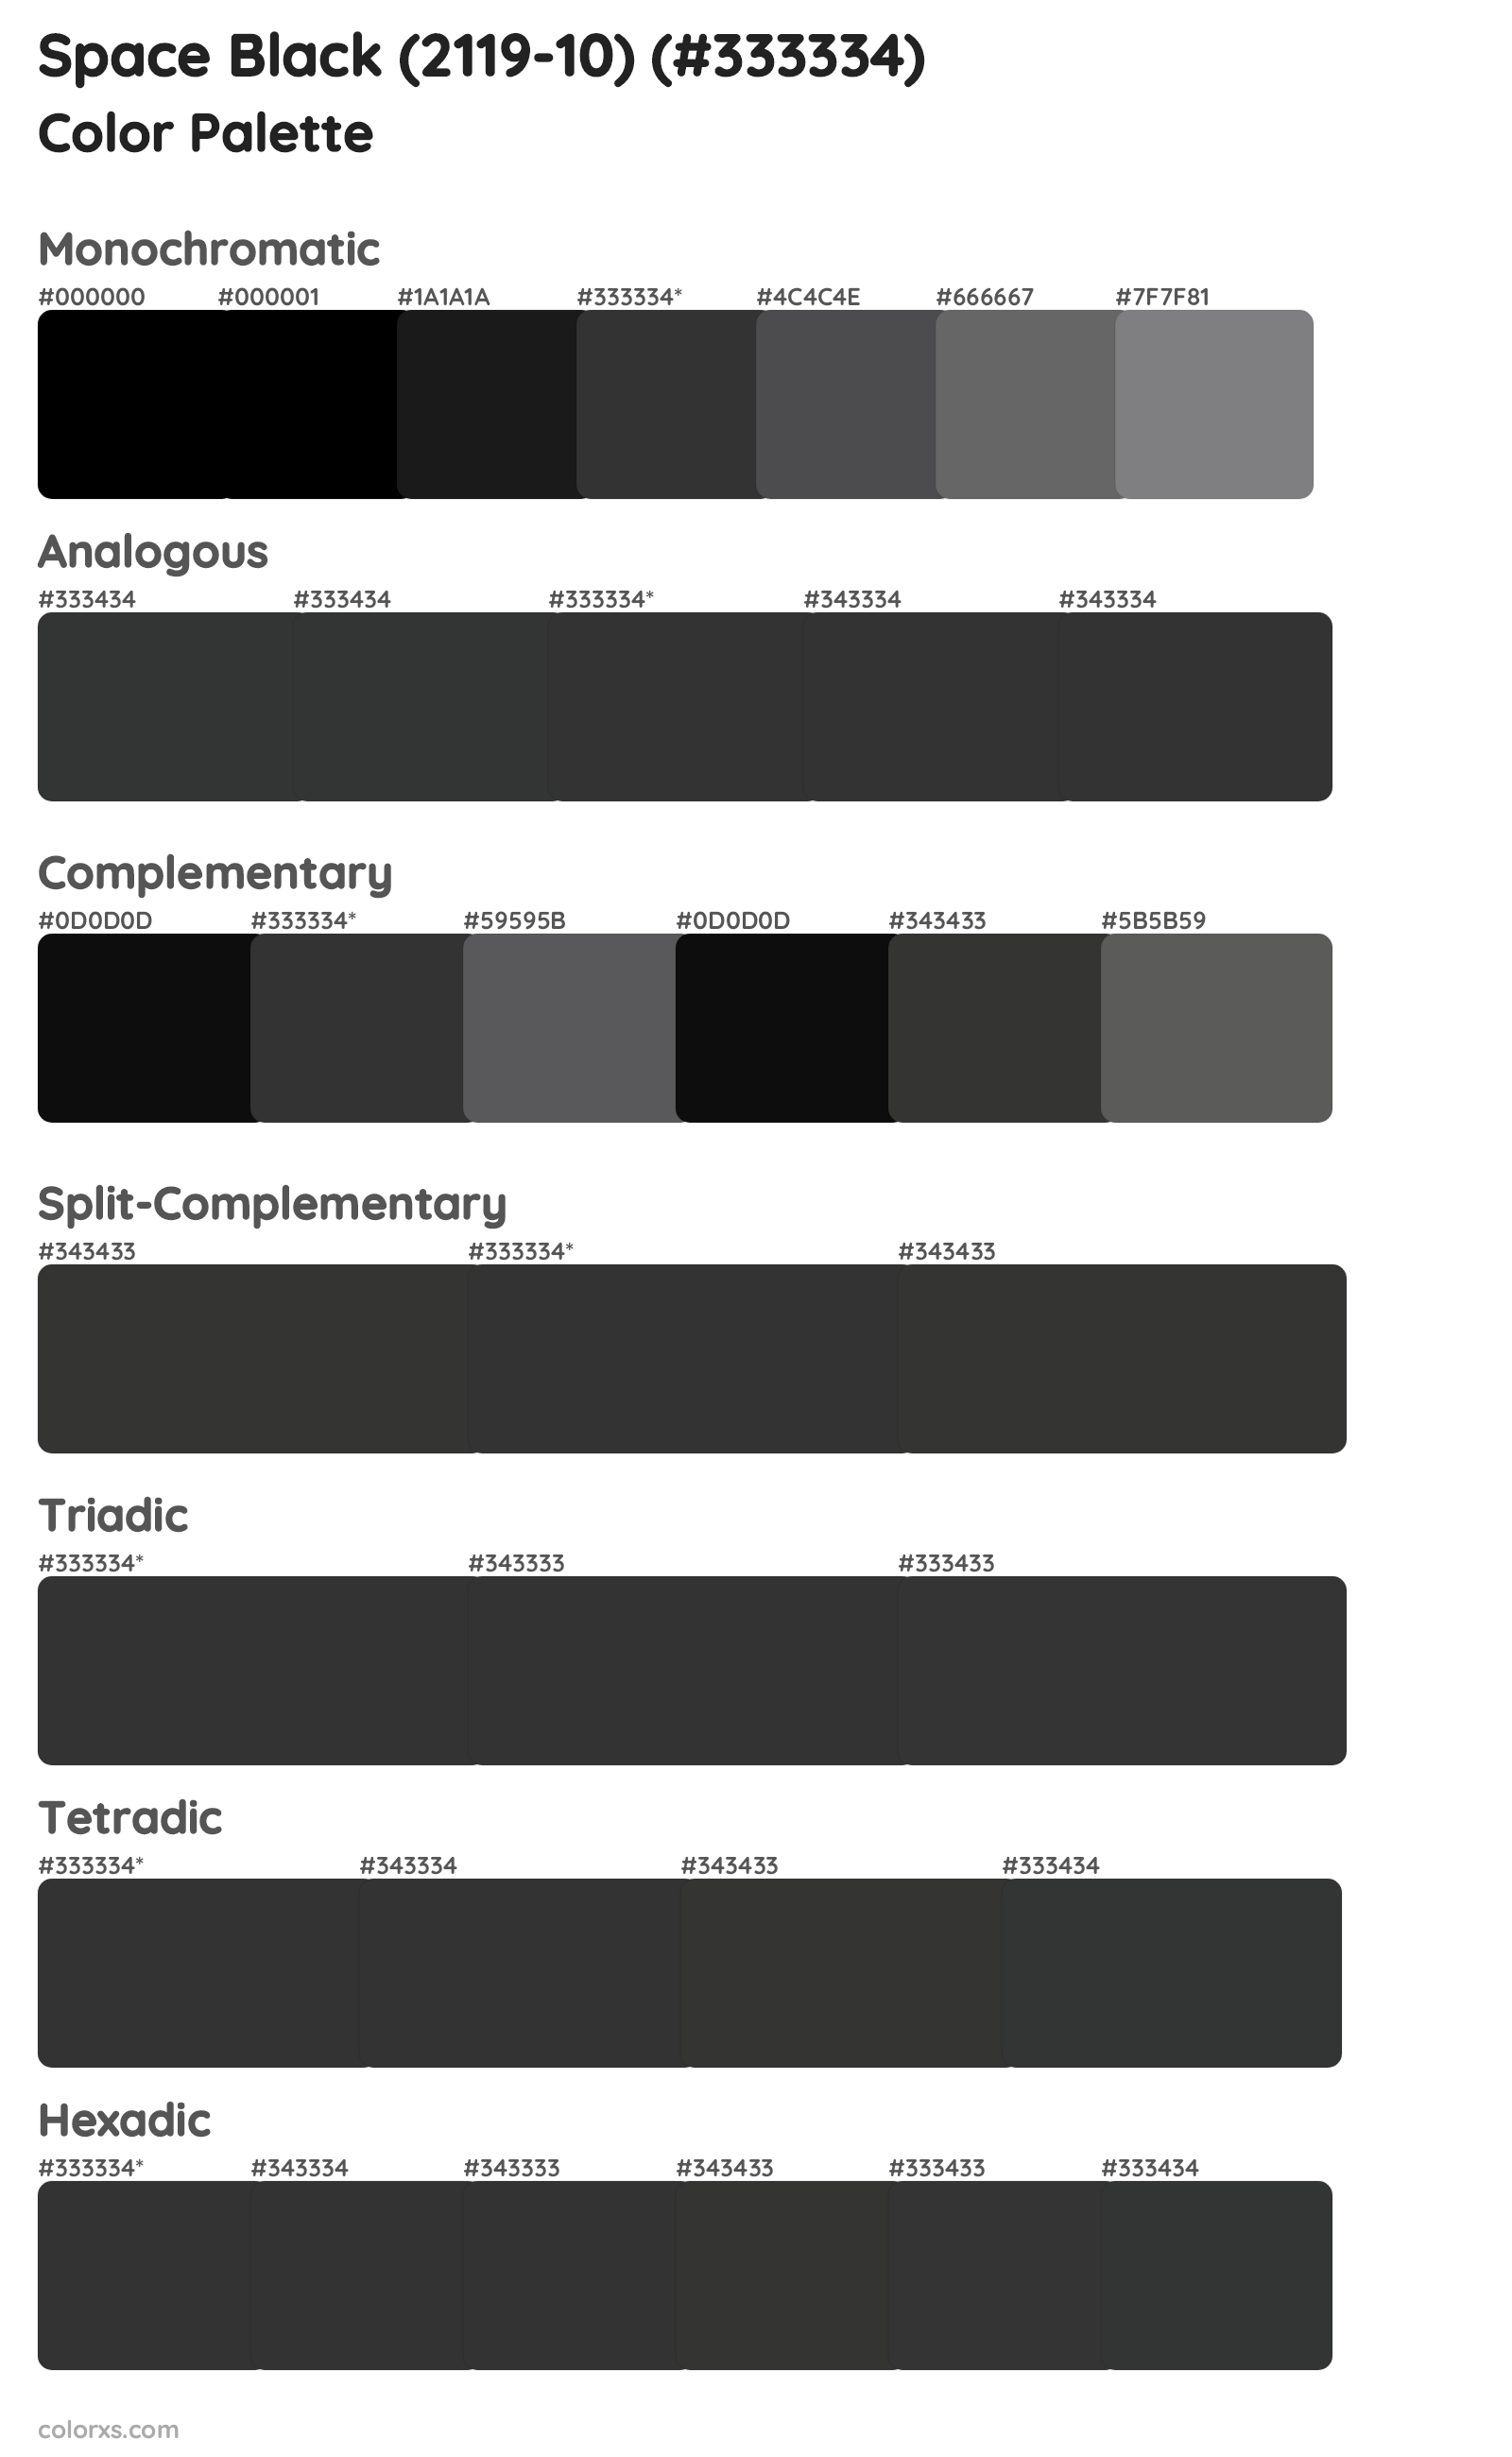 Space Black (2119-10) Color Scheme Palettes